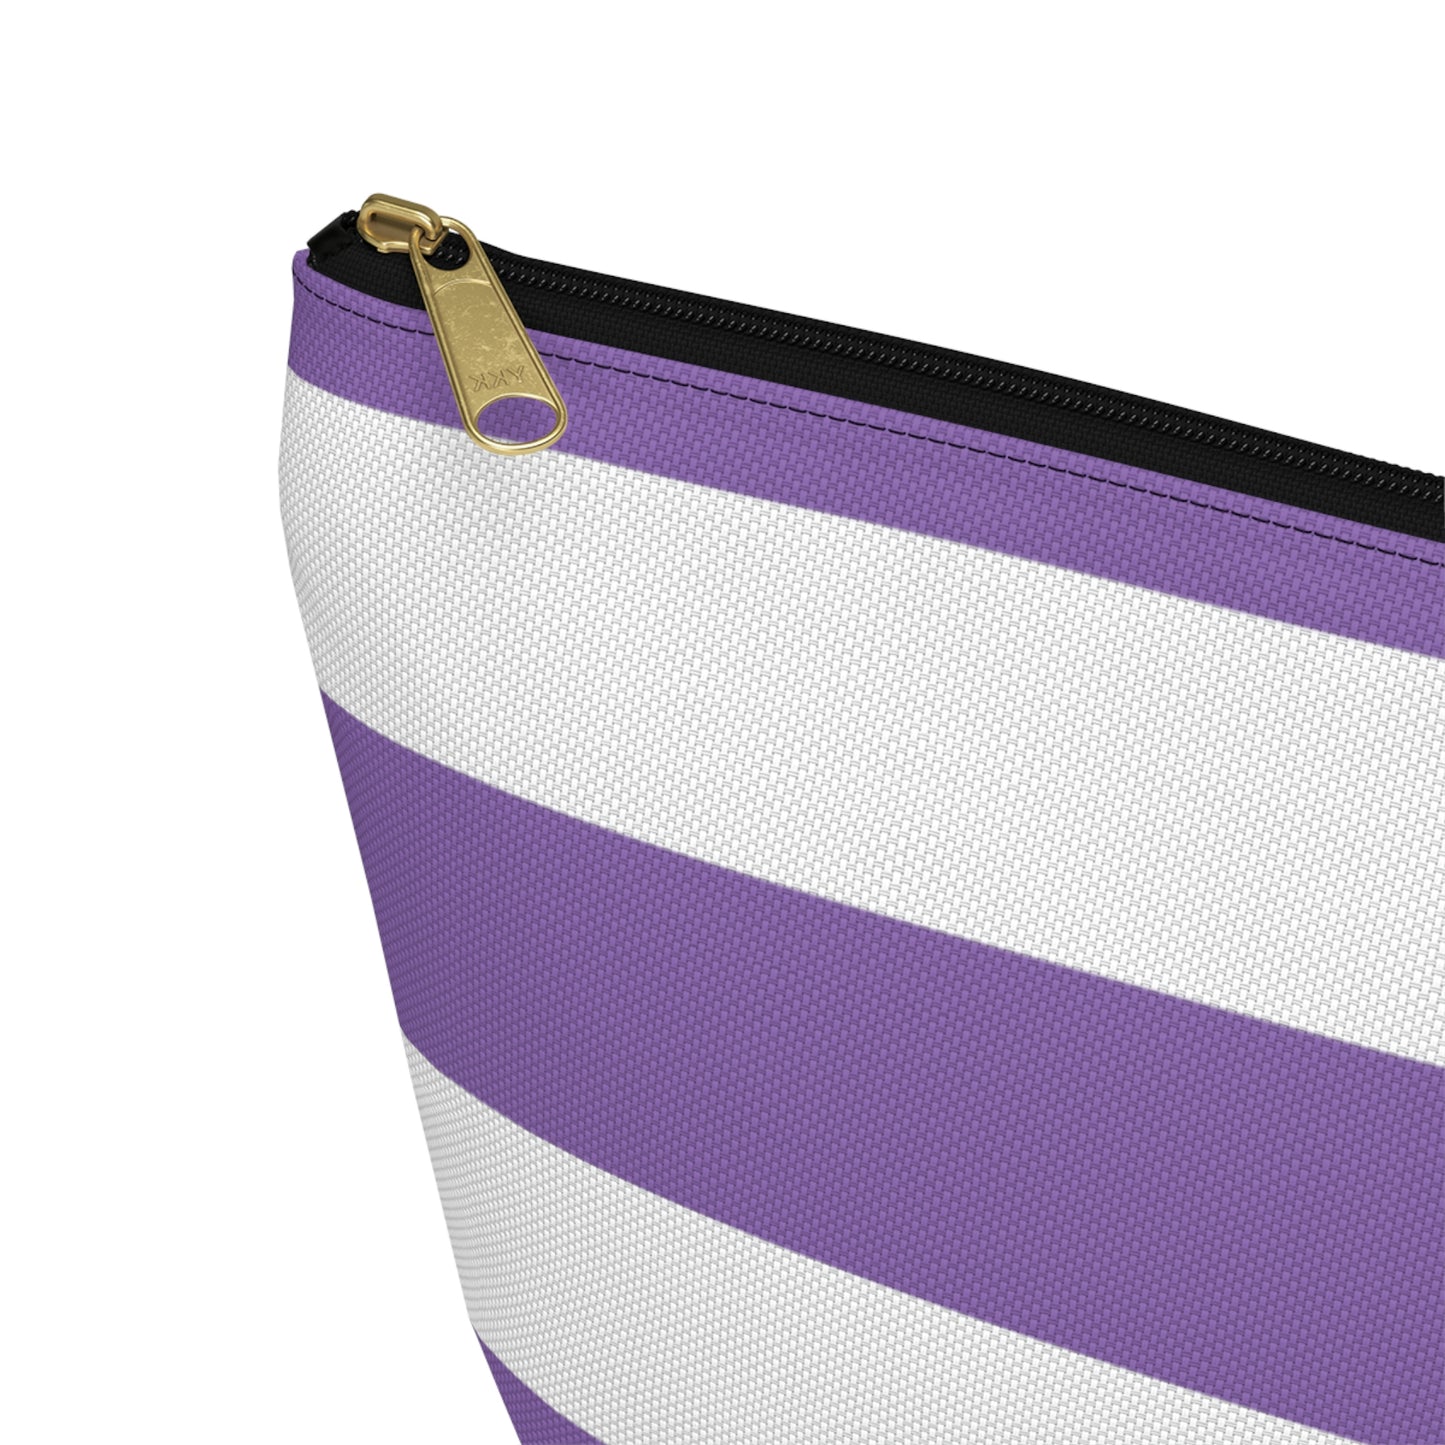 Big Bottom Zipper Pouch - Lilac/White Stripes